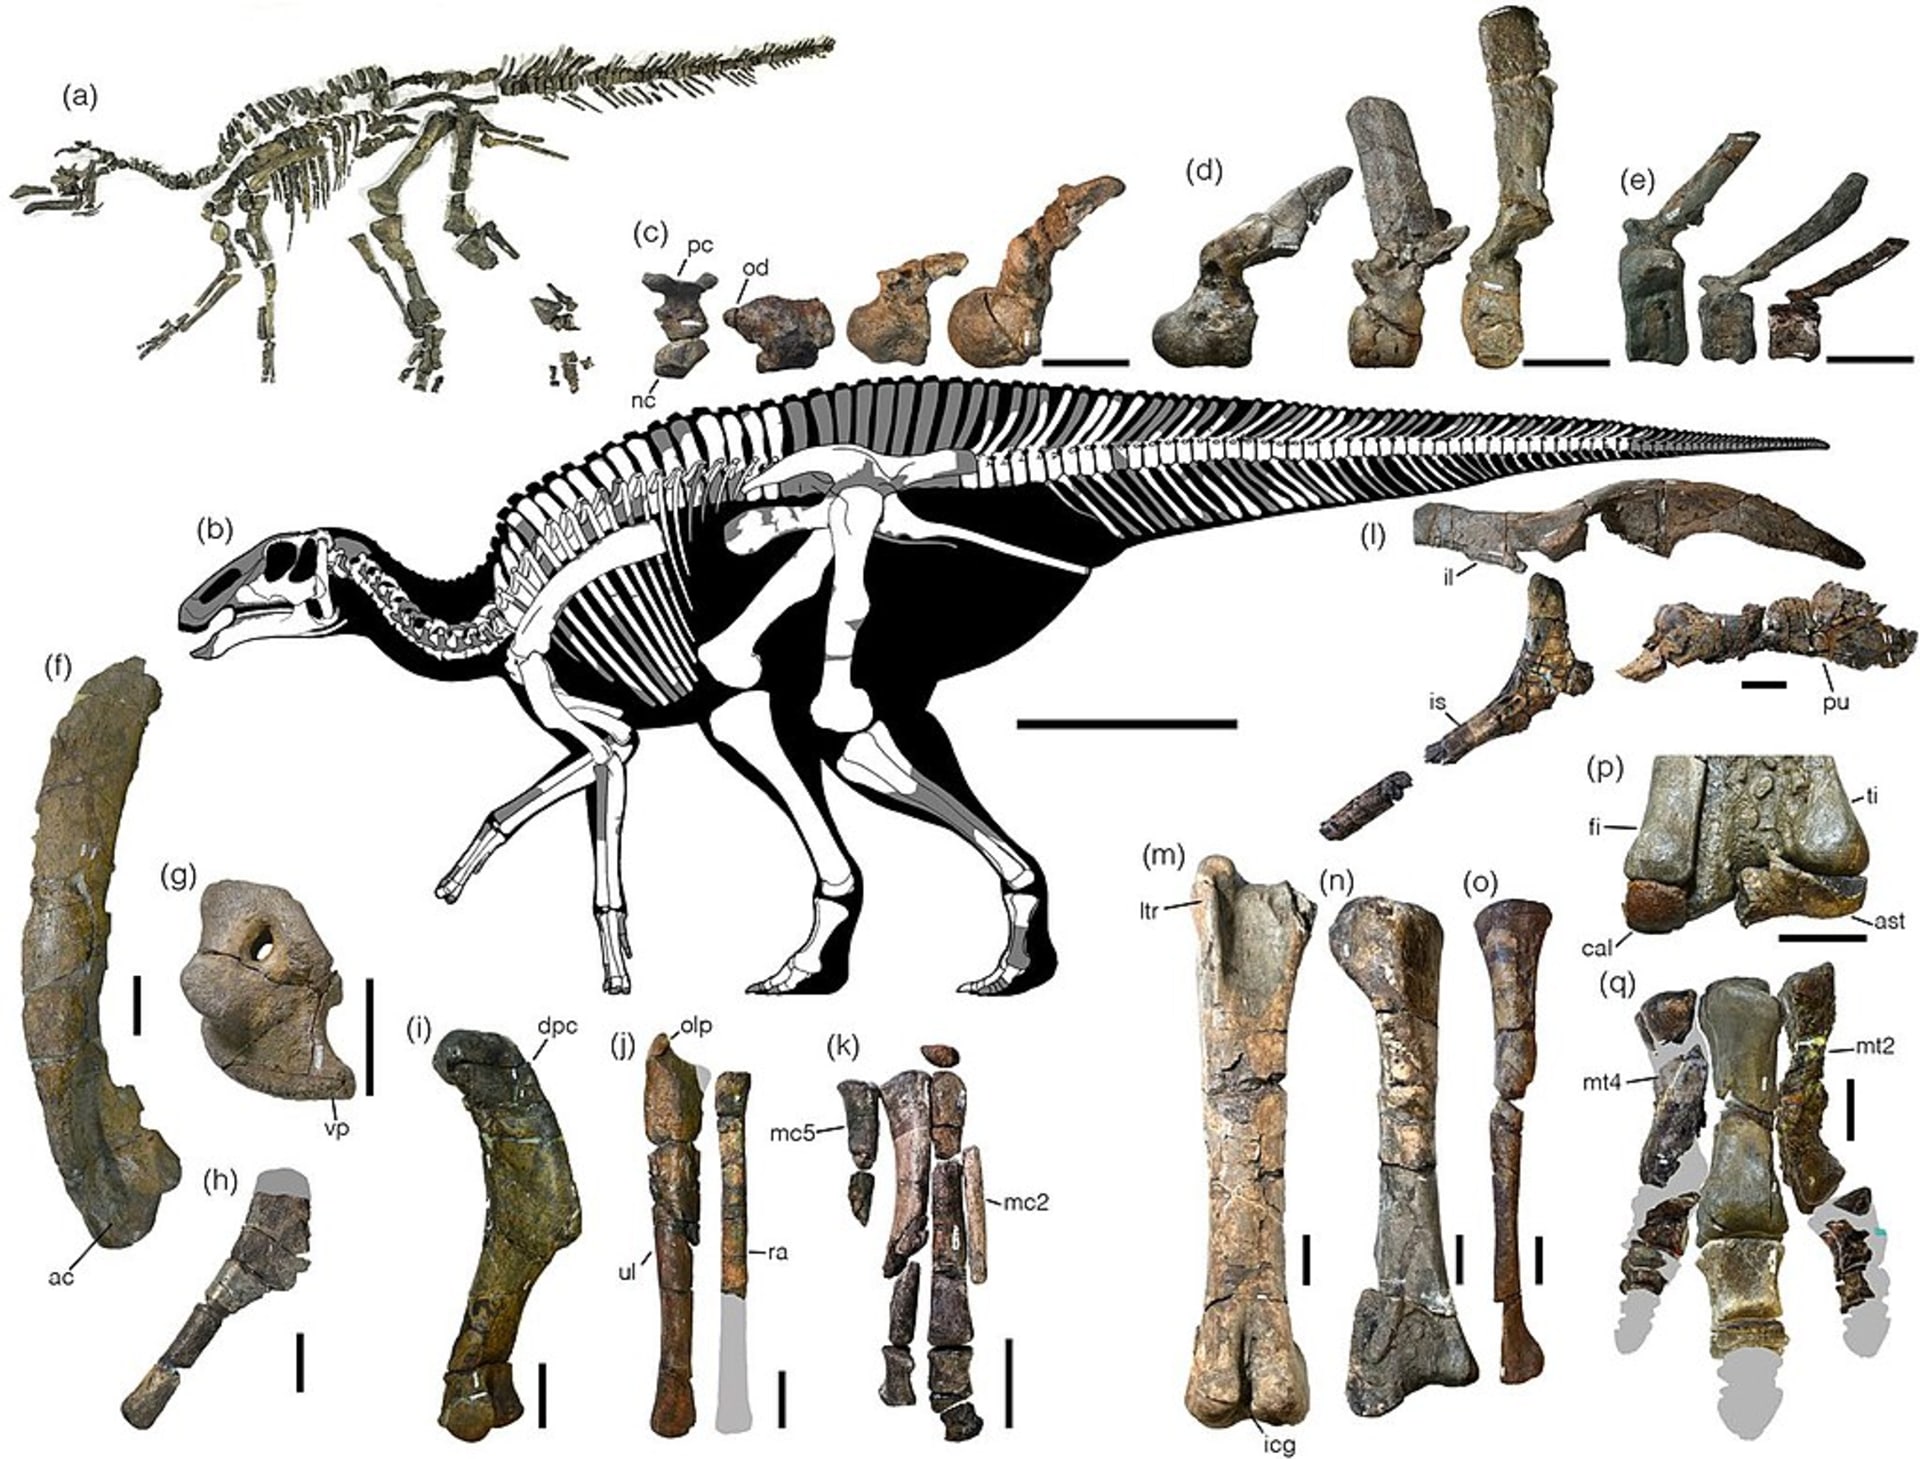 Kosterní diagram a snímky holotypu kamuysaura